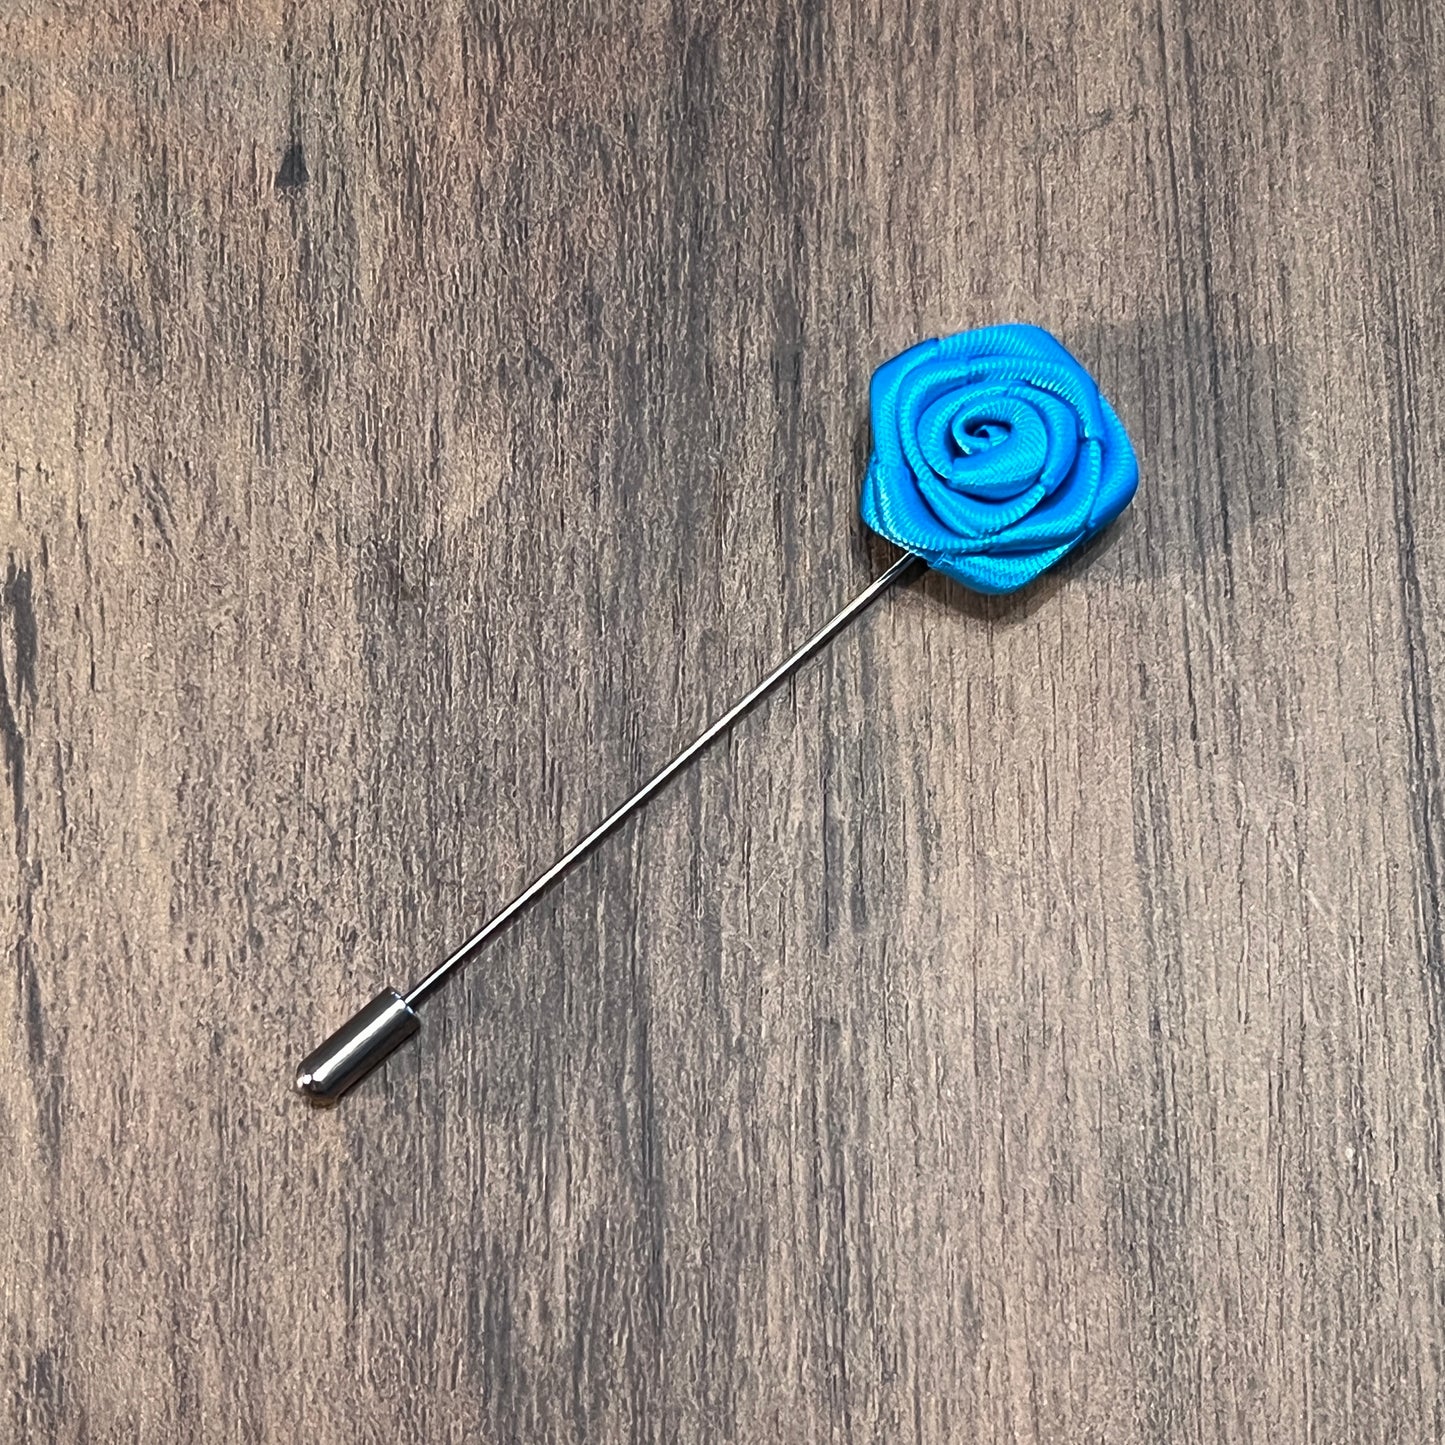 Tasker & Shaw | Luxury Menswear | Electric blue rose flower lapel pin